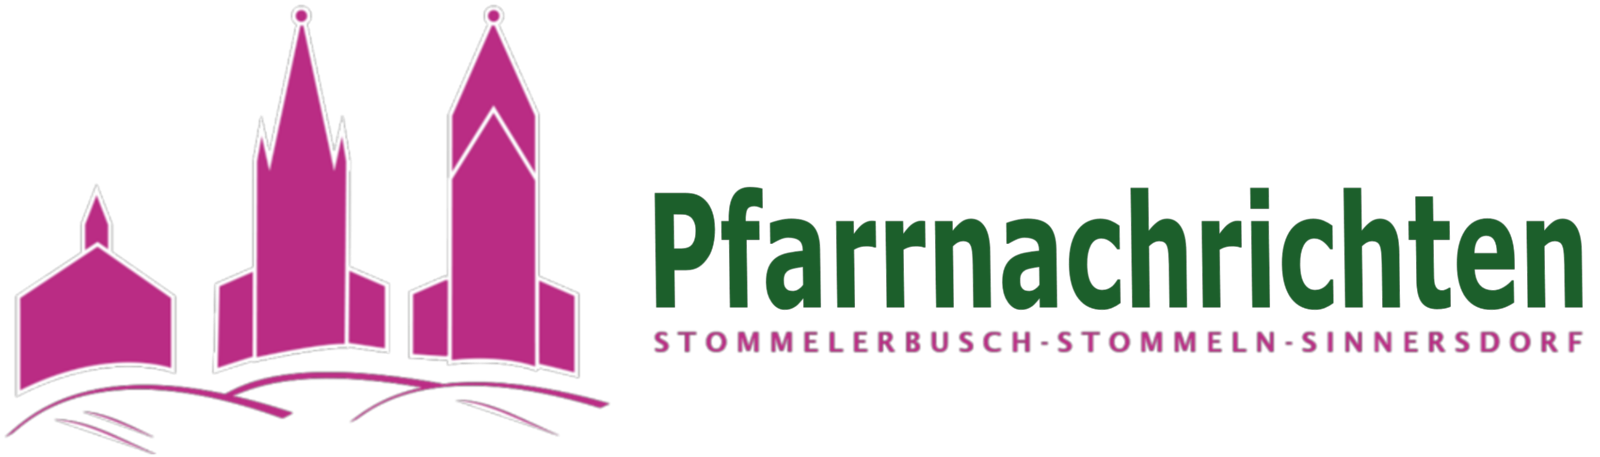 Pfarrnachrichten Logo